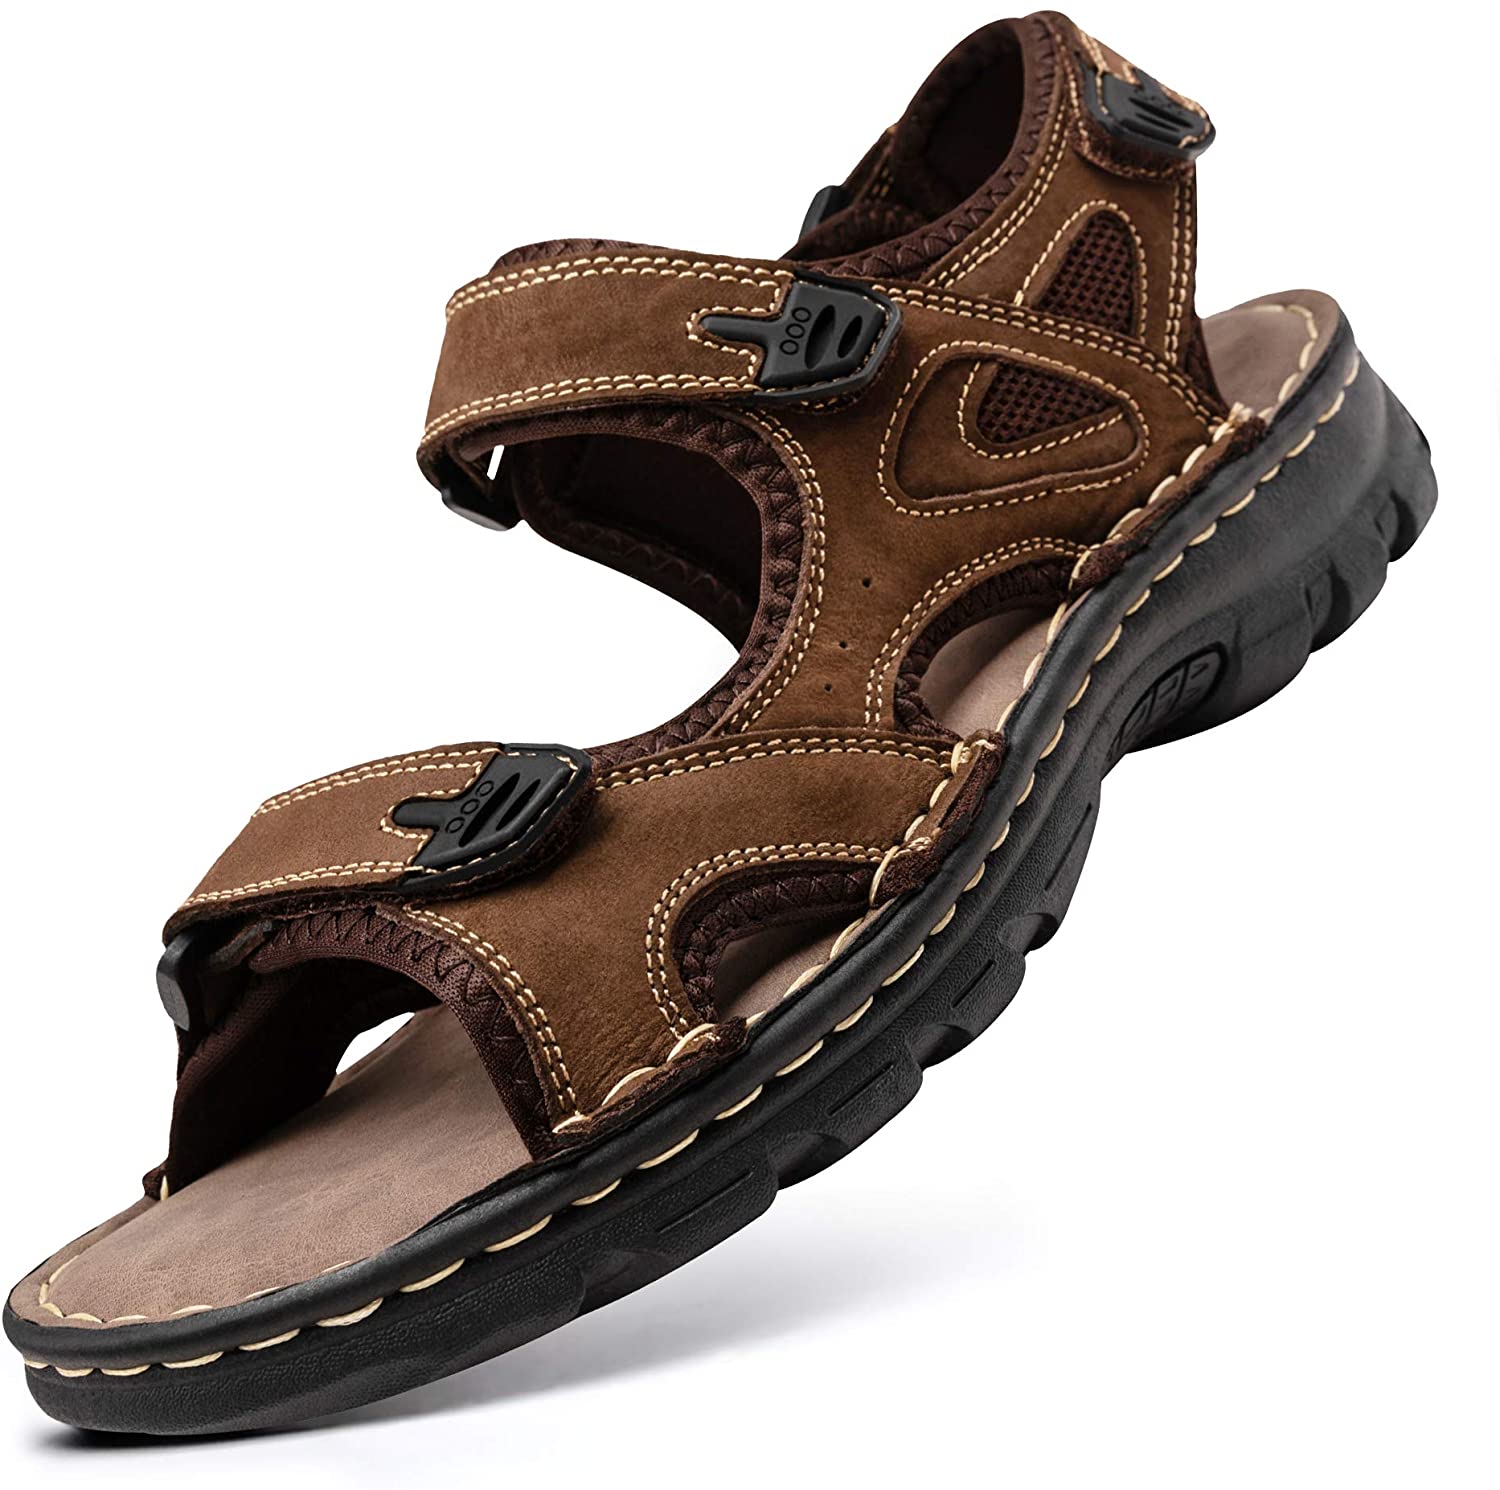 Jousen Men's Sandals Summer Casual Genuine Leather Beach Sandals for Men Outdoor and Indoor Comfort Open Toe Fisherman Sandals 